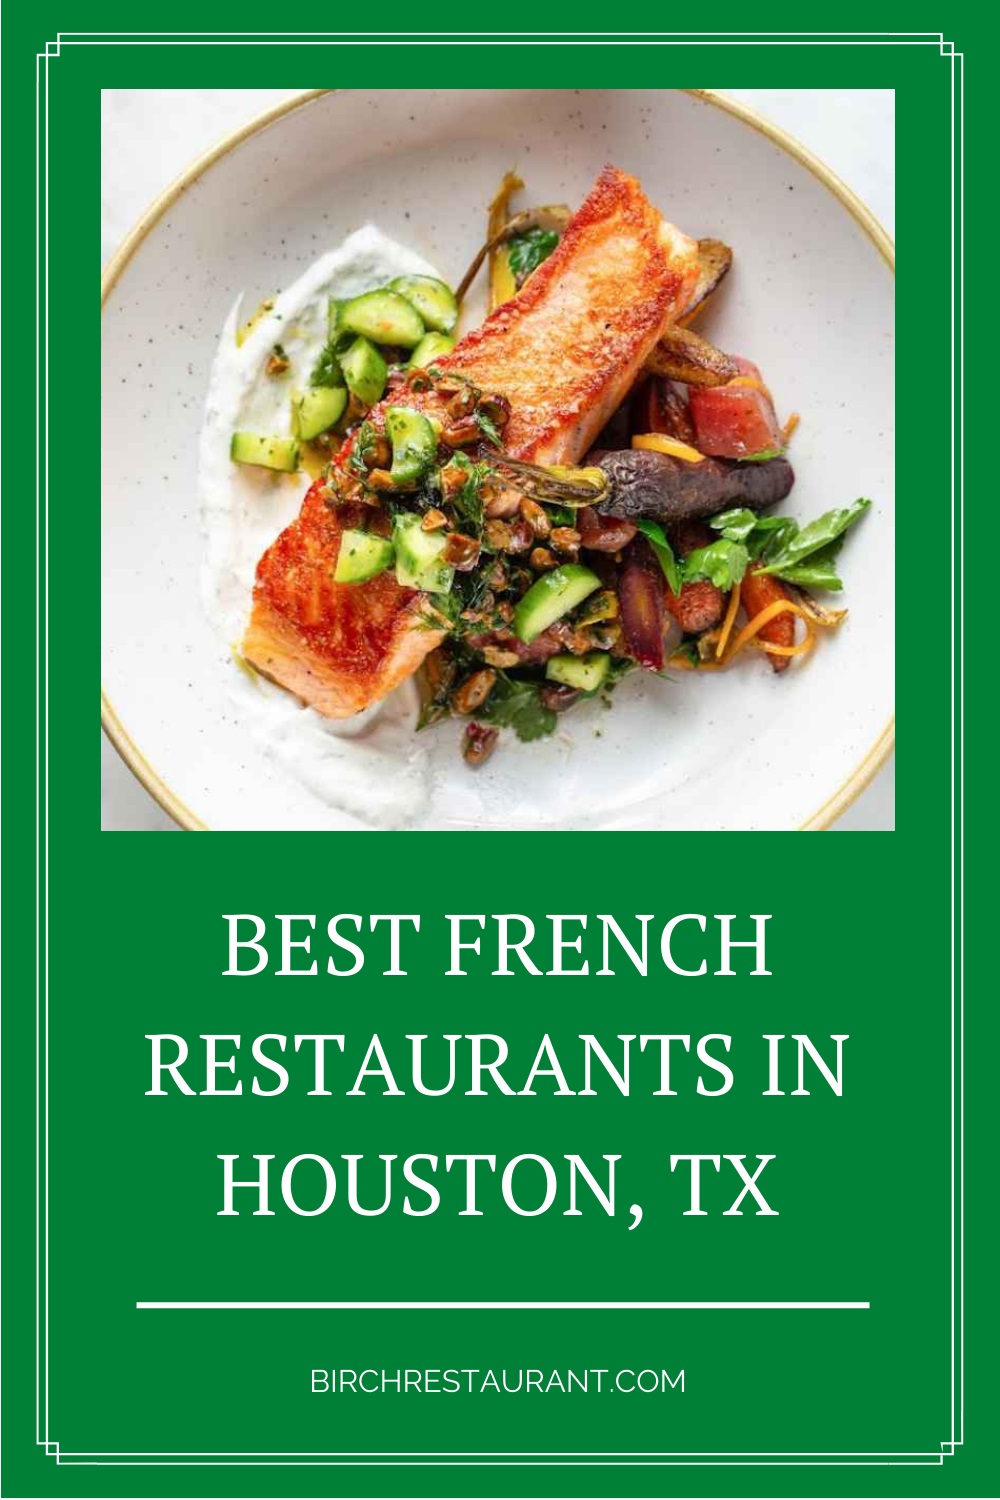 French Restaurants in Houston, TX